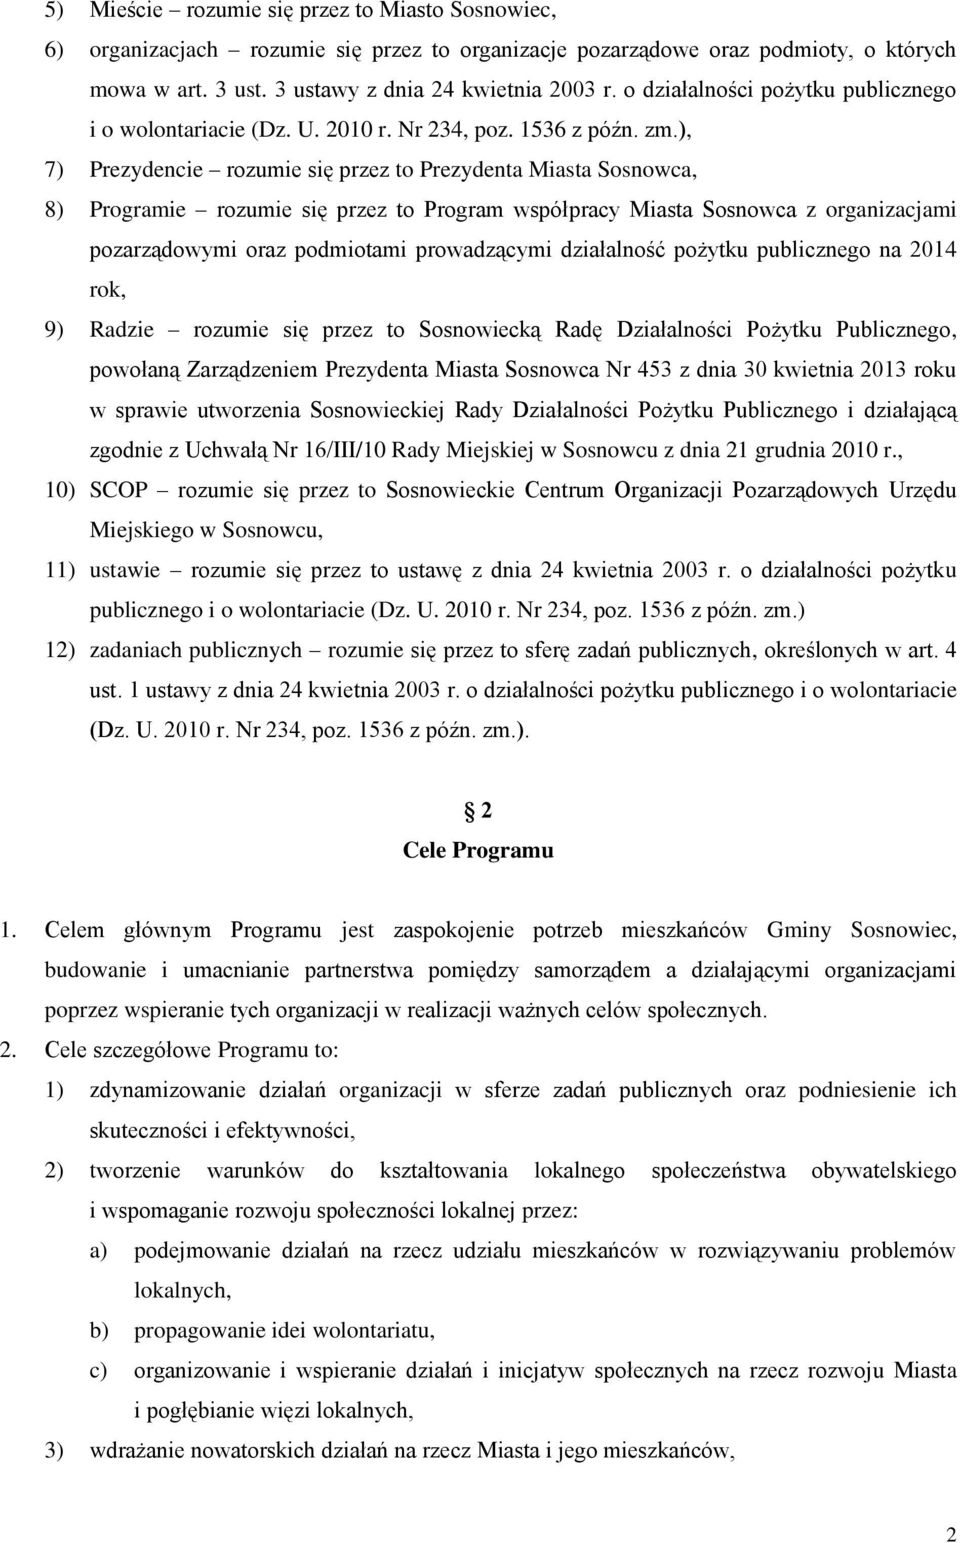 ), 7) Prezydencie rozumie się przez to Prezydenta Miasta Sosnowca, 8) Programie rozumie się przez to Program współpracy Miasta Sosnowca z organizacjami pozarządowymi oraz podmiotami prowadzącymi